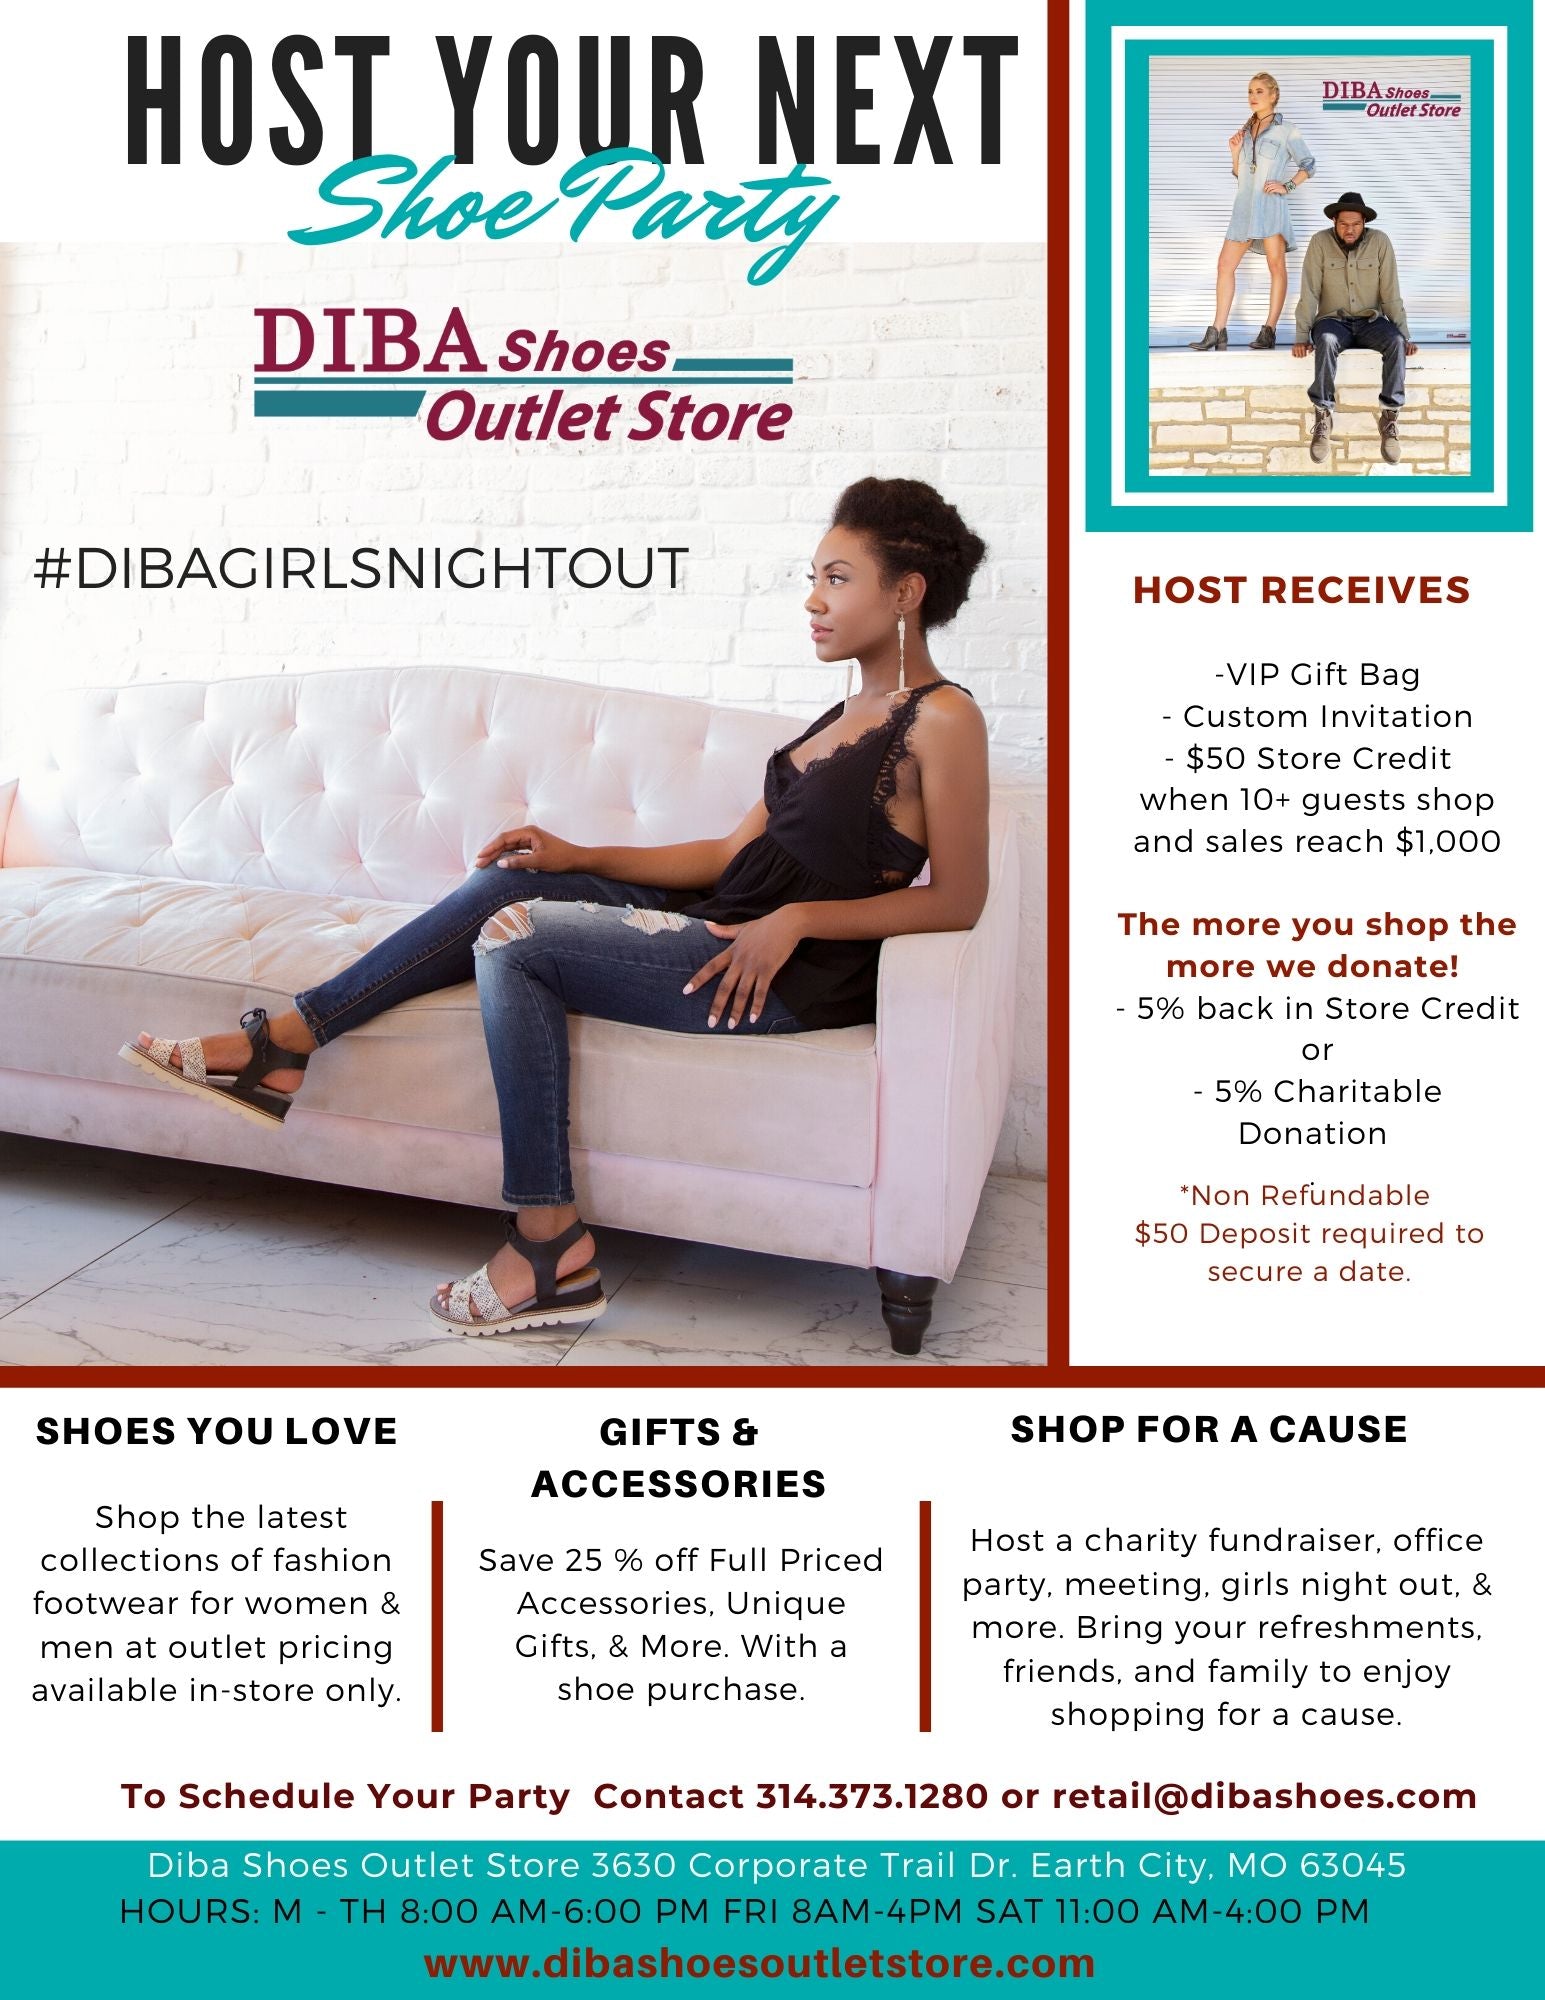  Shoe Party - Diba Shoes